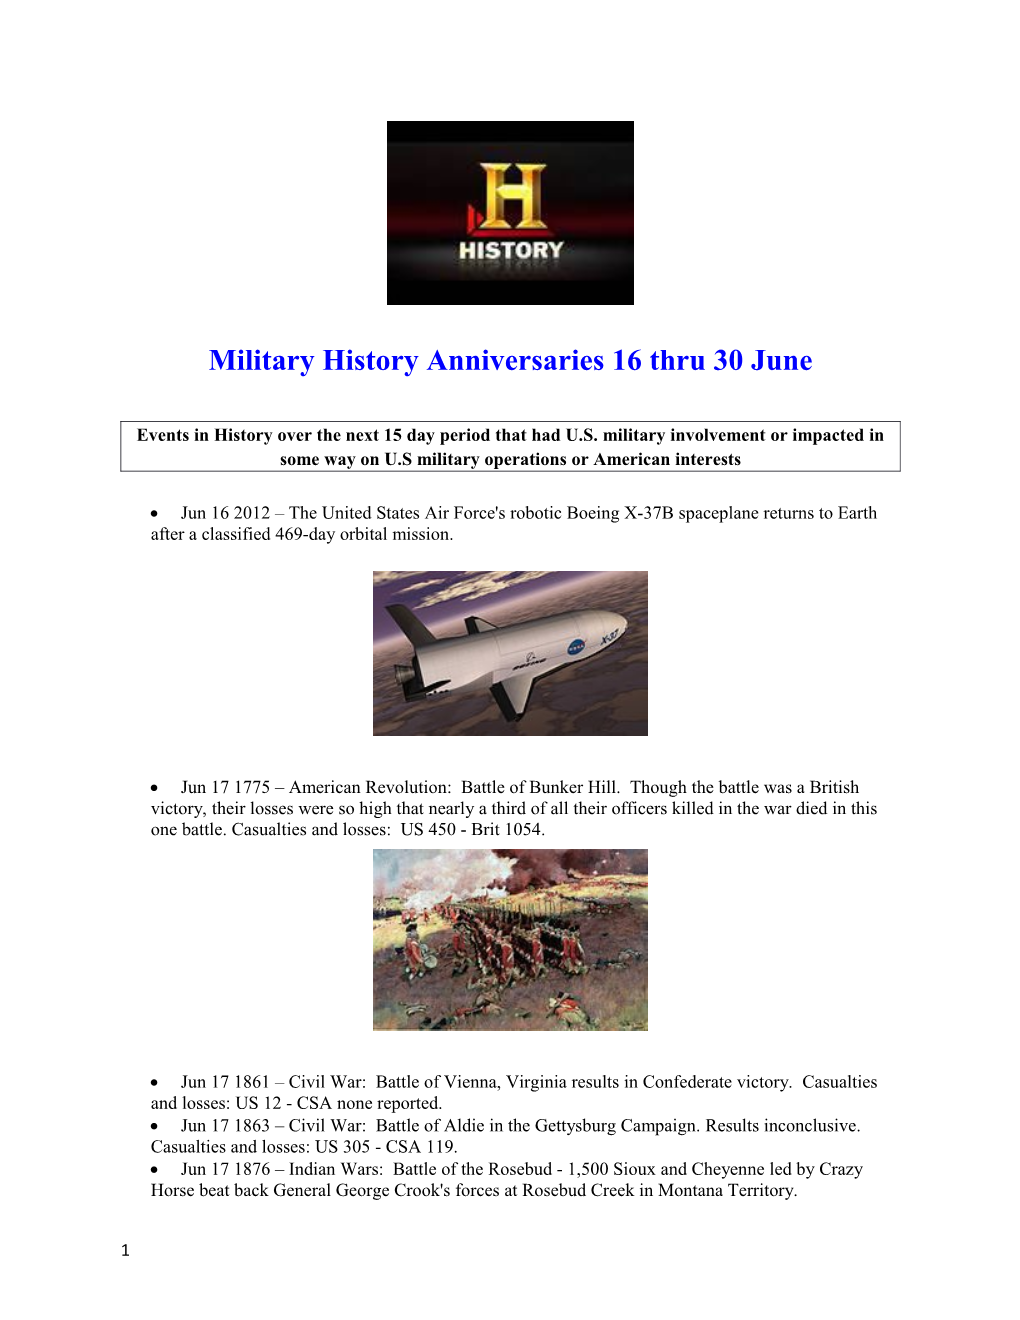 Military History Anniversaries16thru 30June